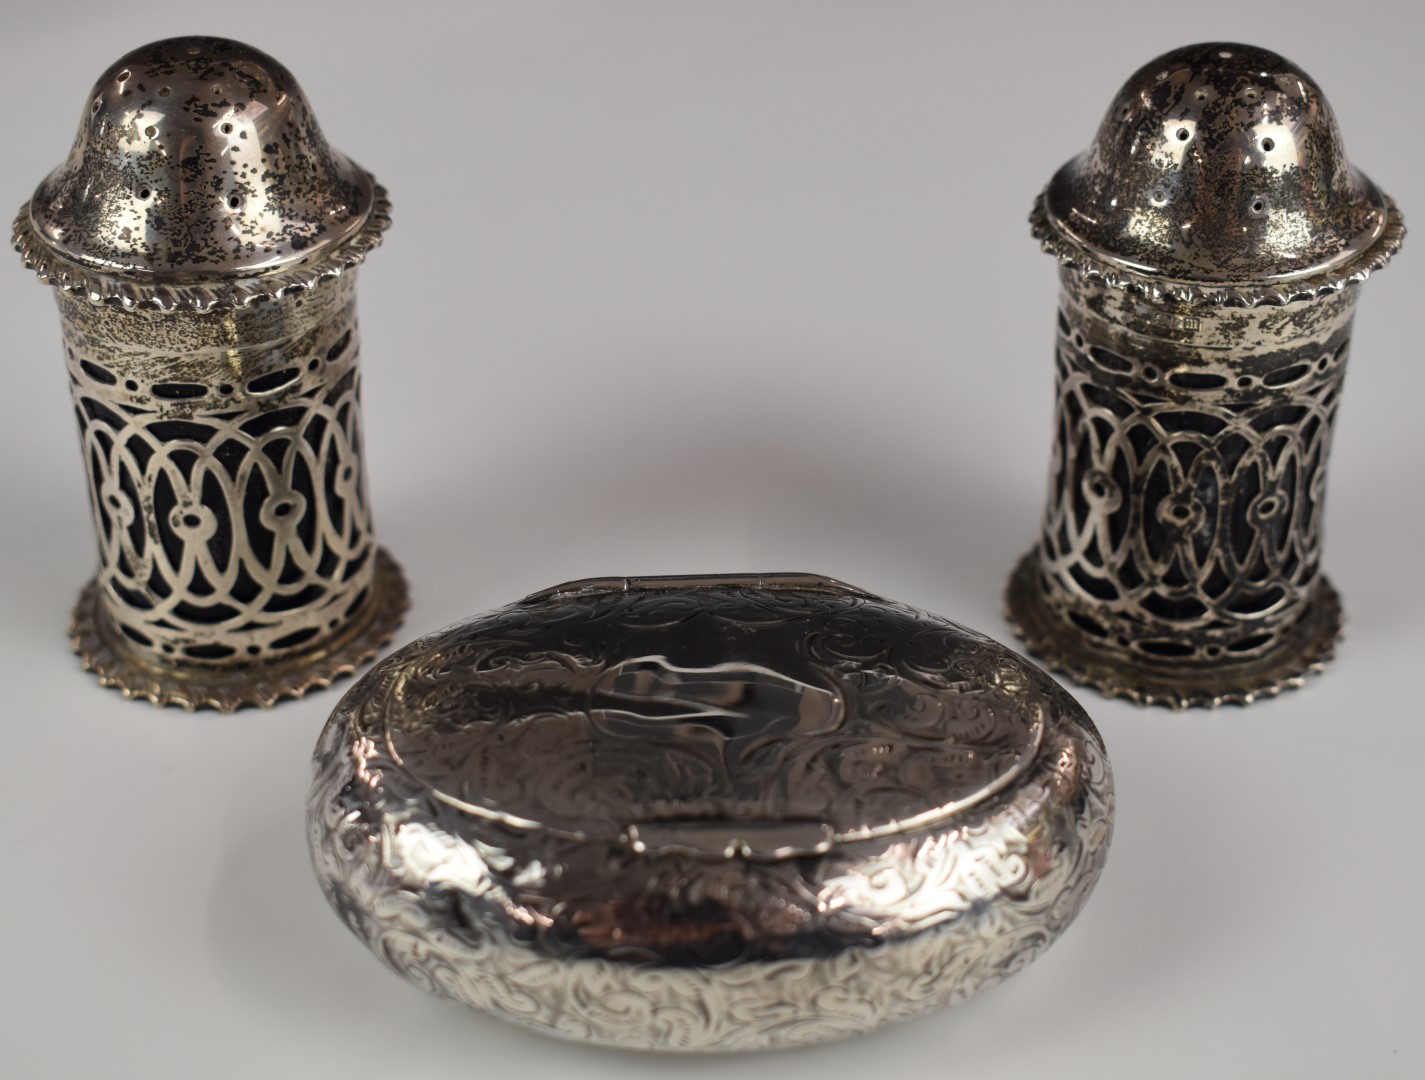 Edward VII hallmarked silver oval snuff or similar box, Birmingham 1902, maker Synyer & Beddoes,